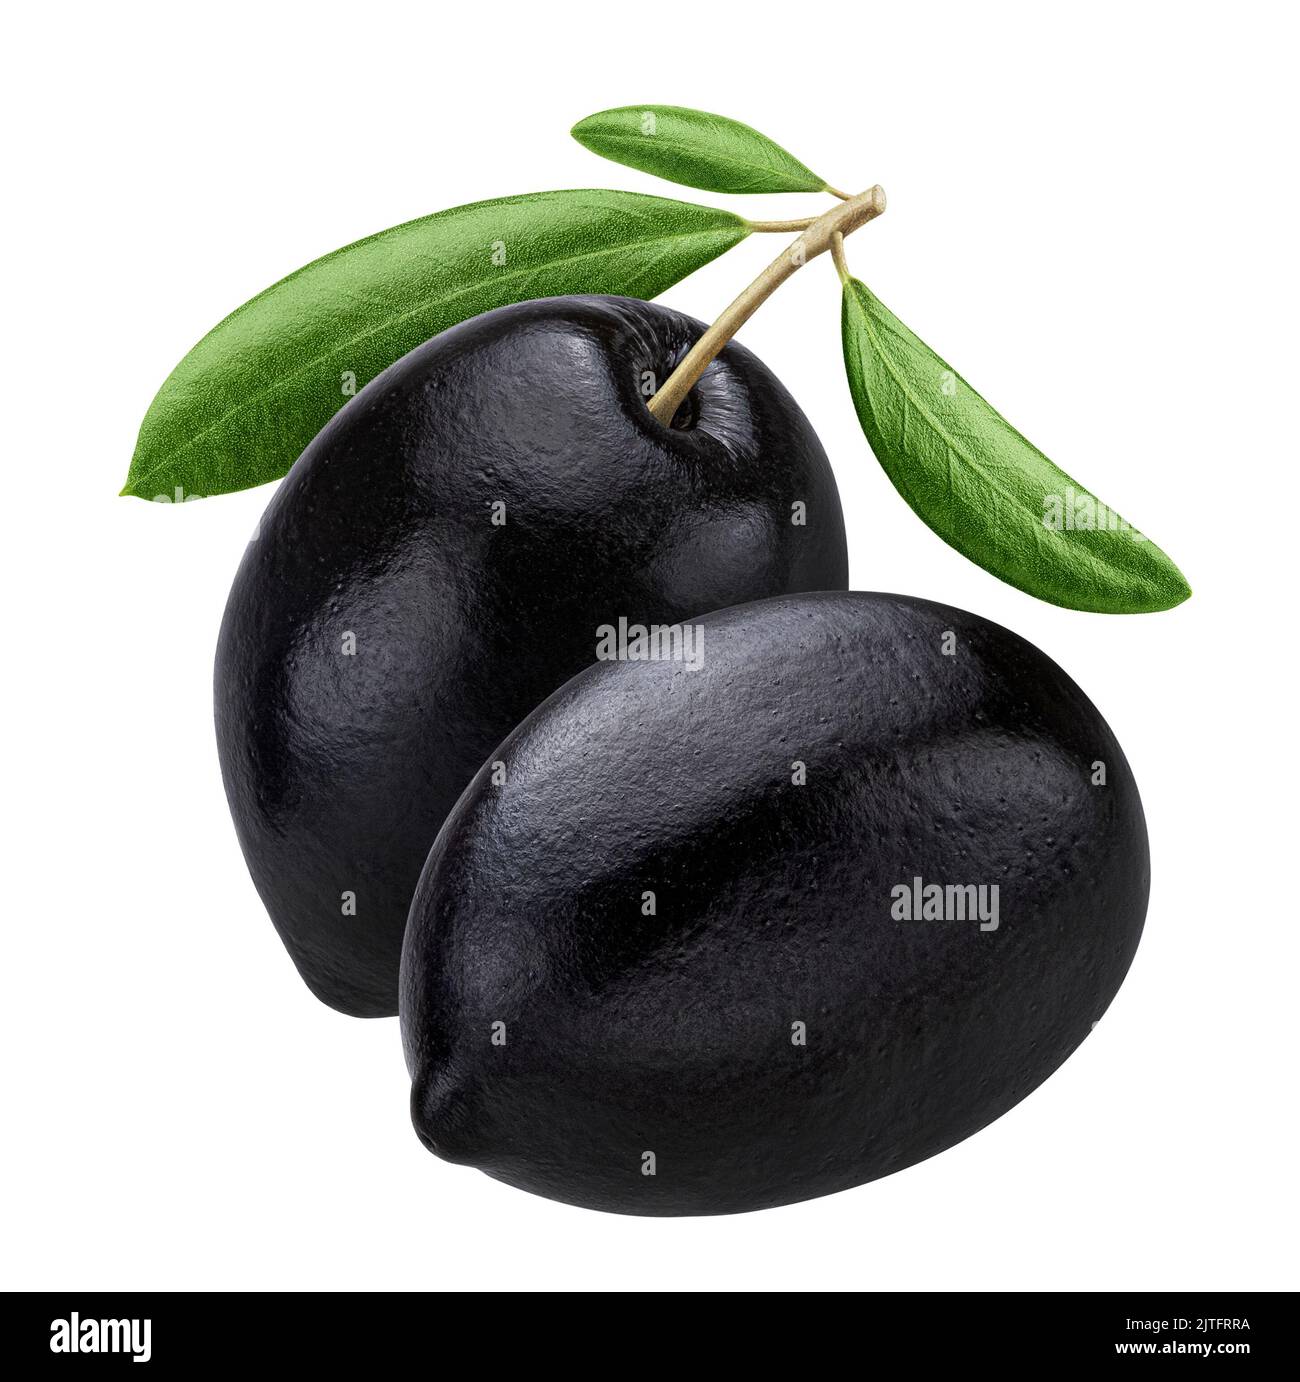 Black olives isolated on white background Stock Photo